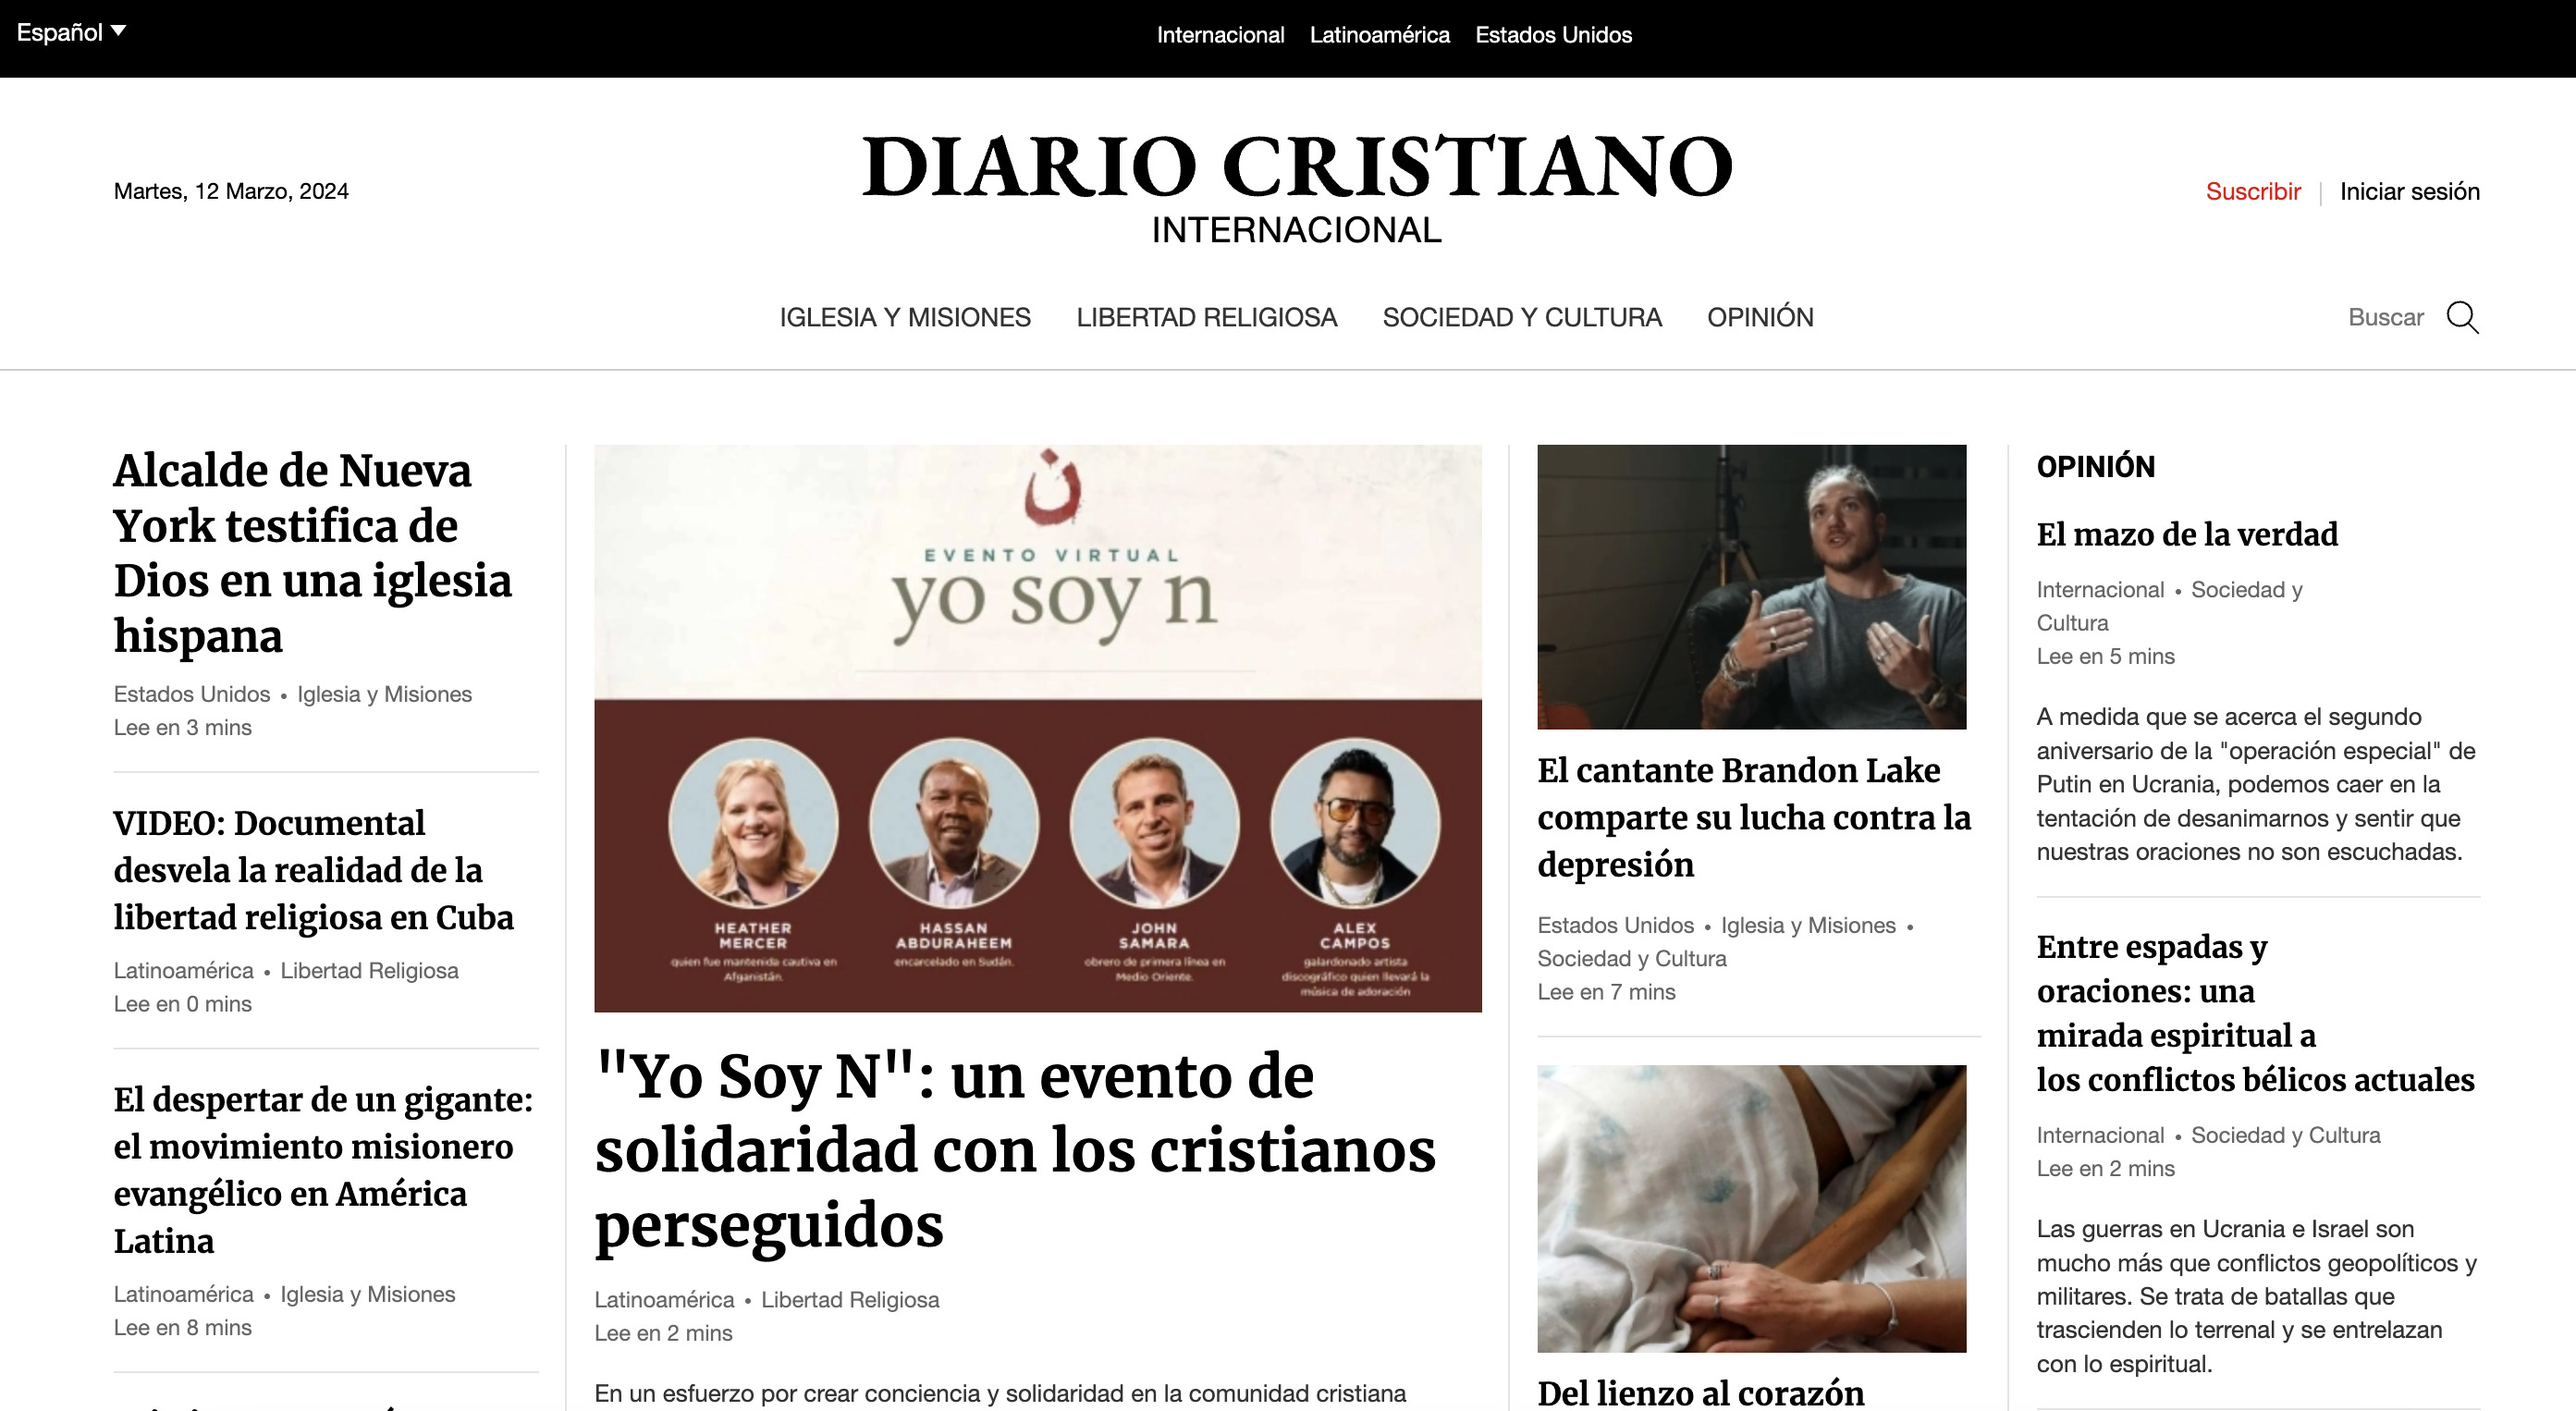 CDI lanza la edición española del 'Diario Cristiano'